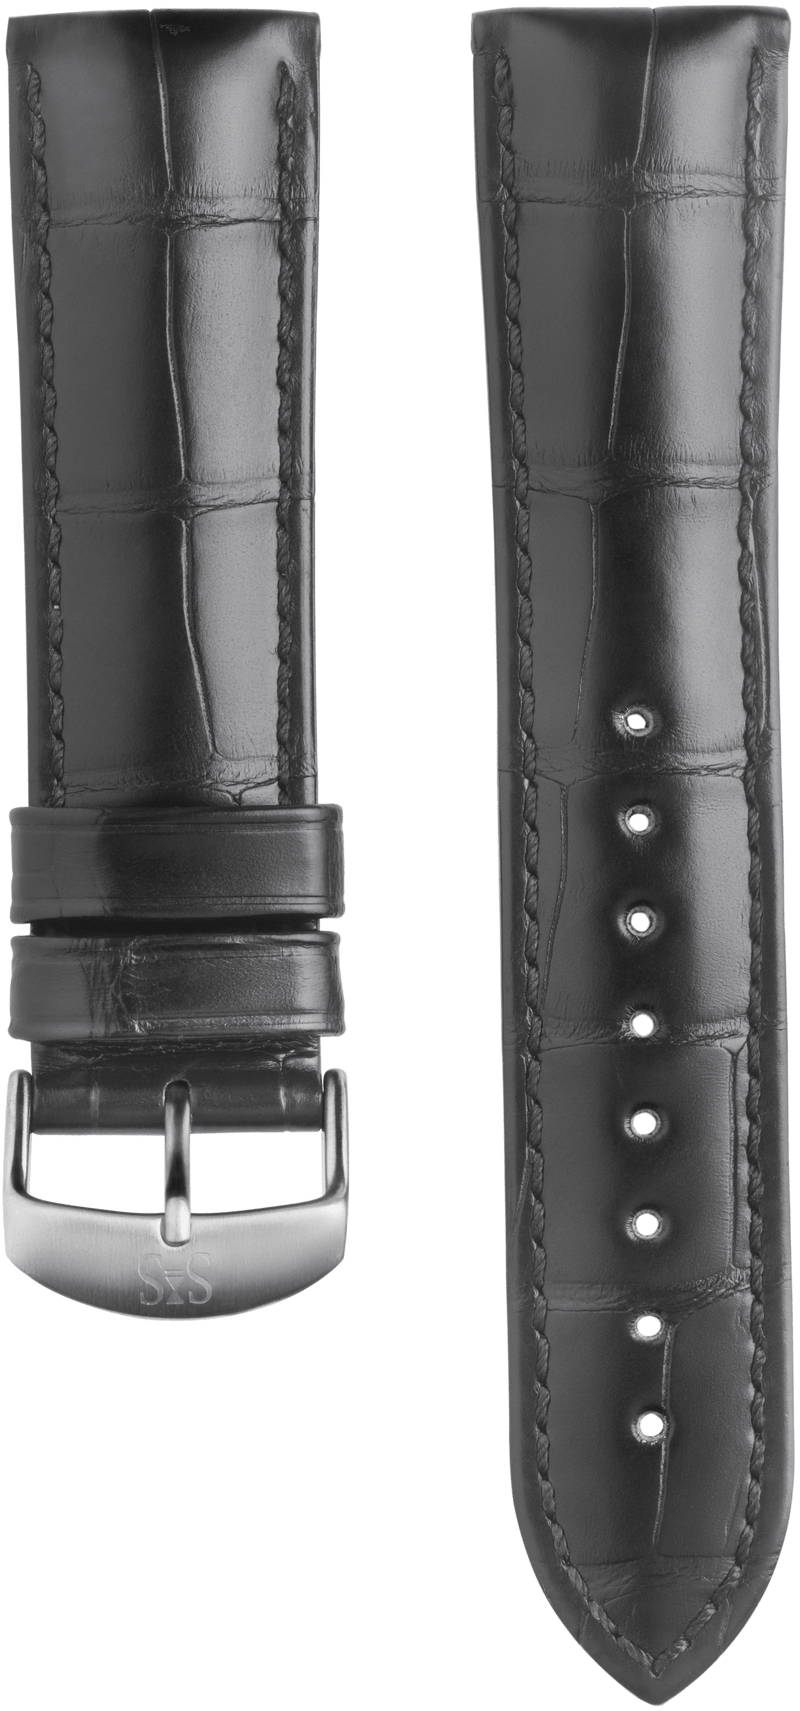 22mm Black alligator leather strap